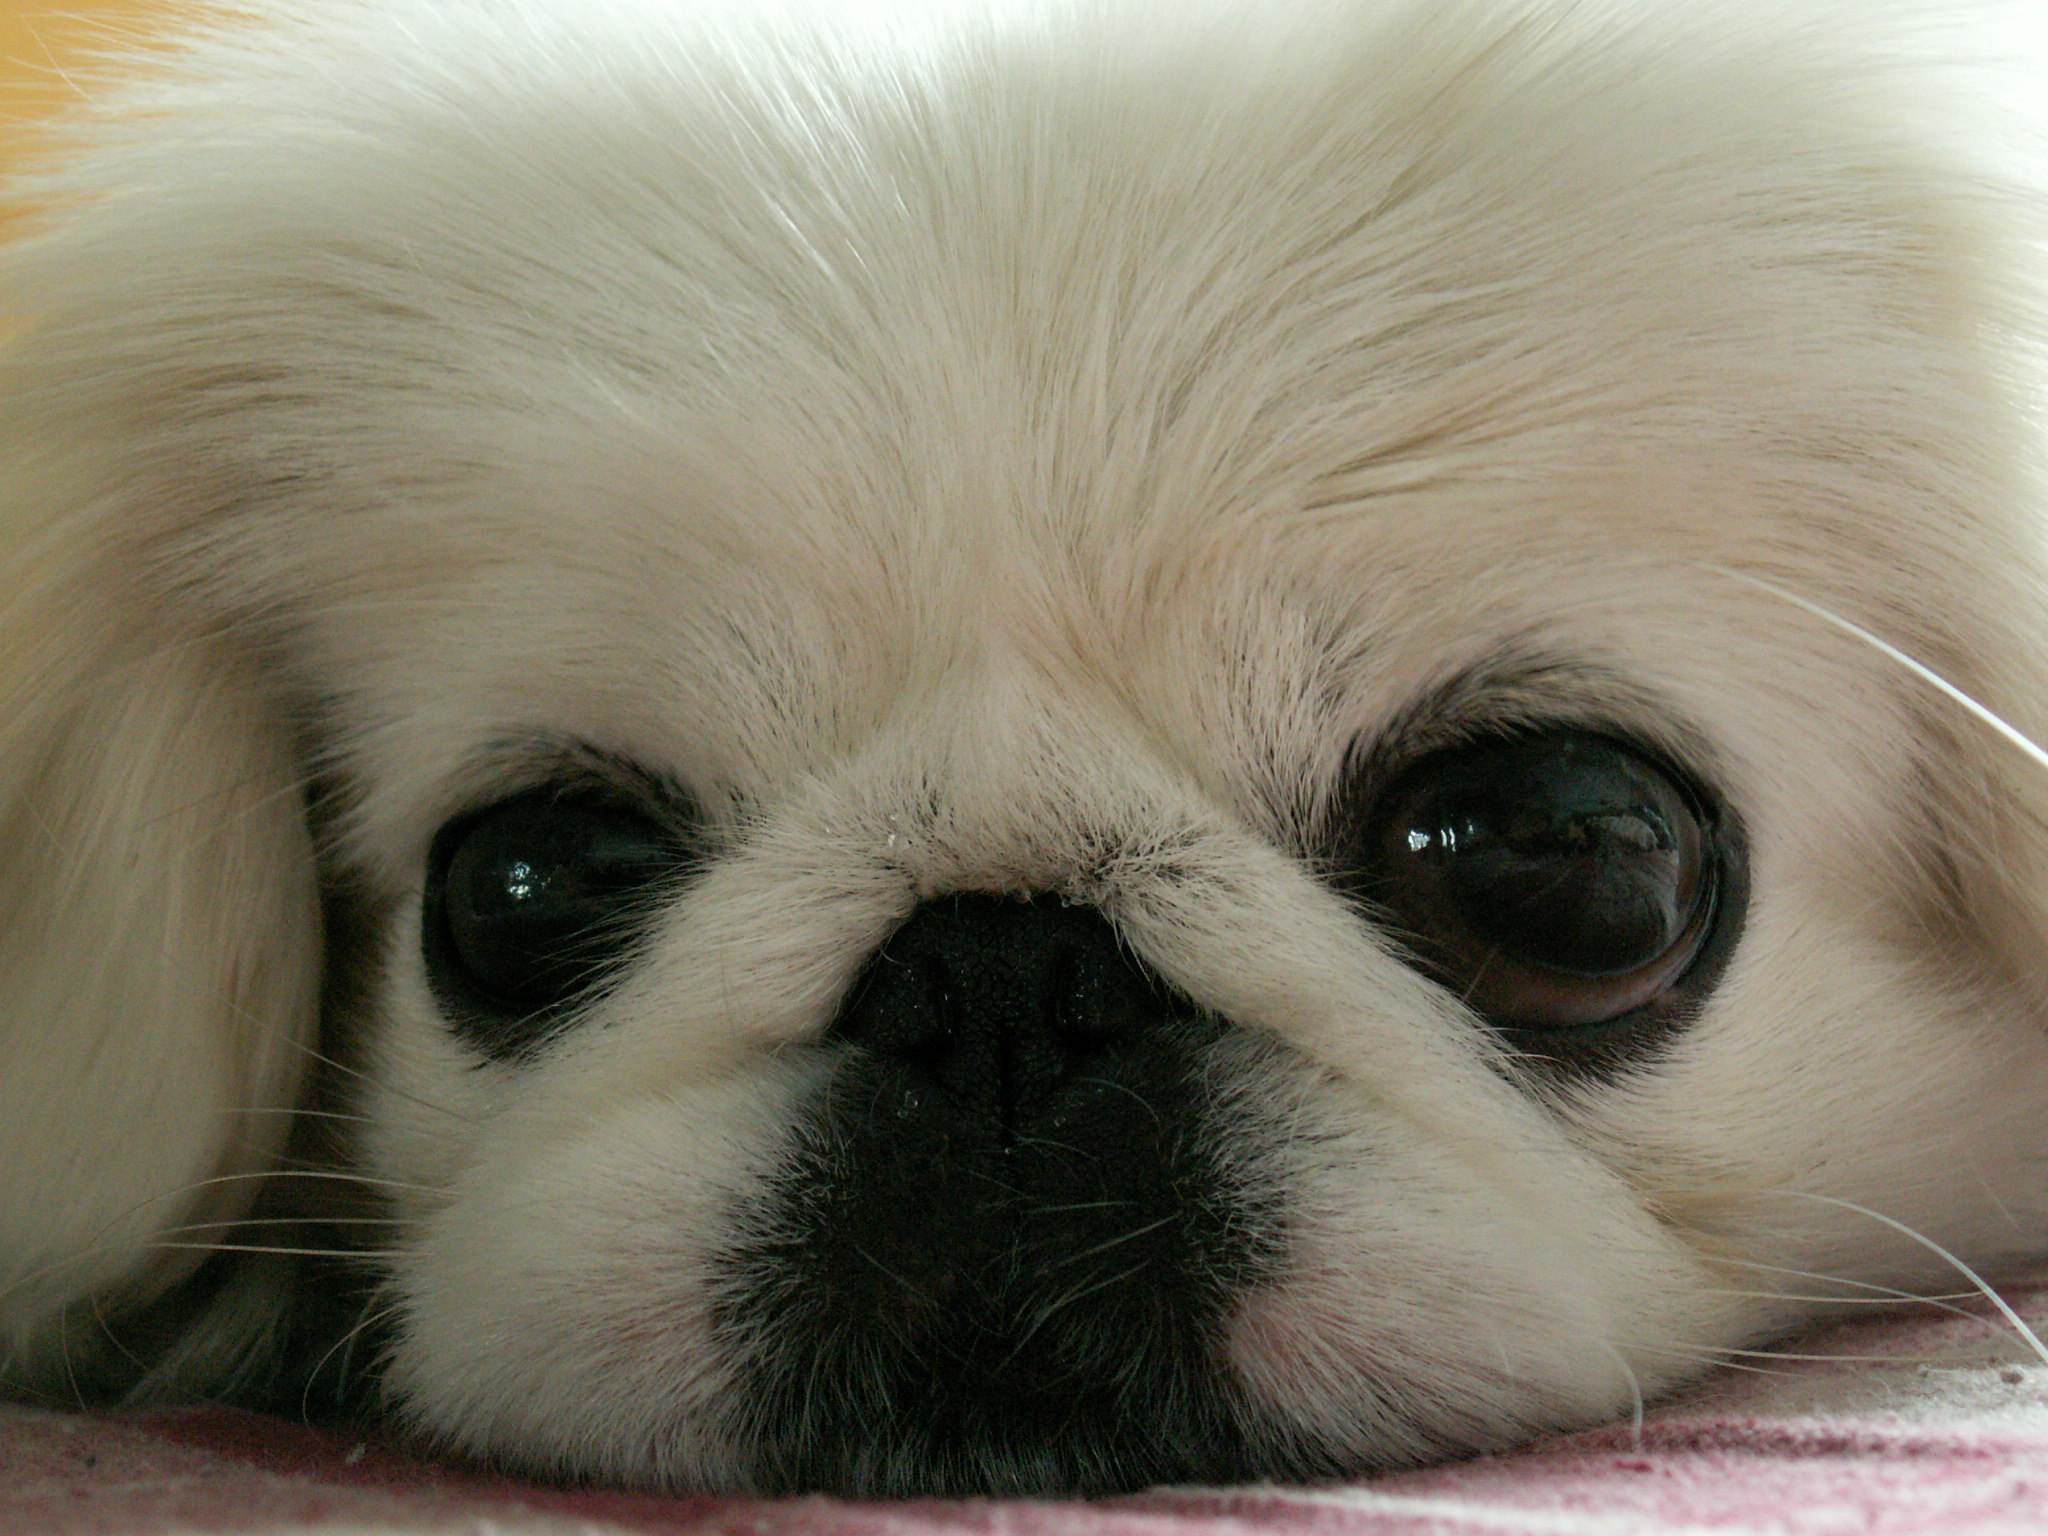 京巴犬又称北京犬,宫廷狮子狗,是中国古老的犬种,已有四千年的历史